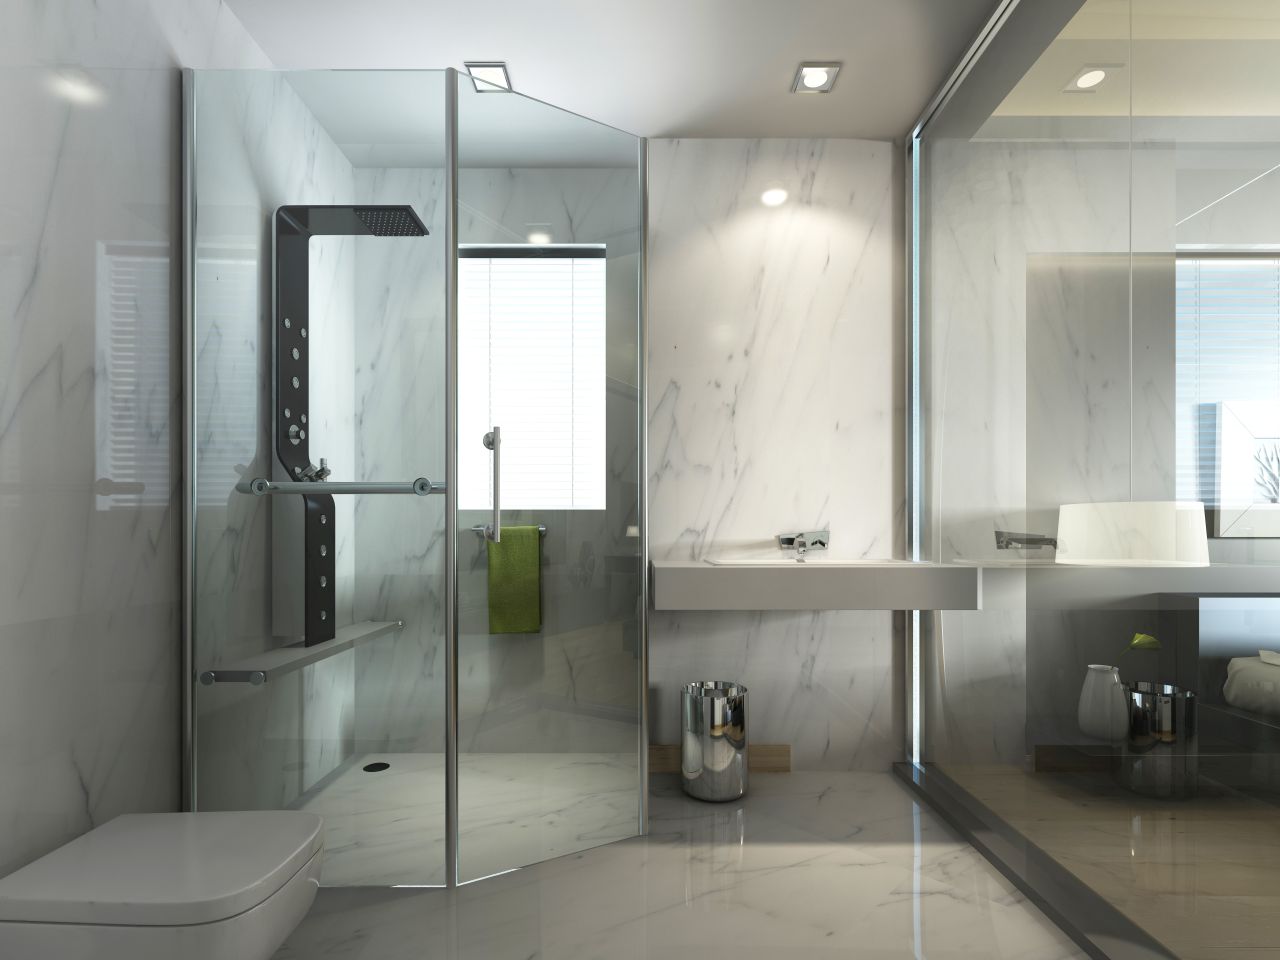 Jak zaprojektować komfortowe i praktyczne do użytkowania wnętrze łazienki?